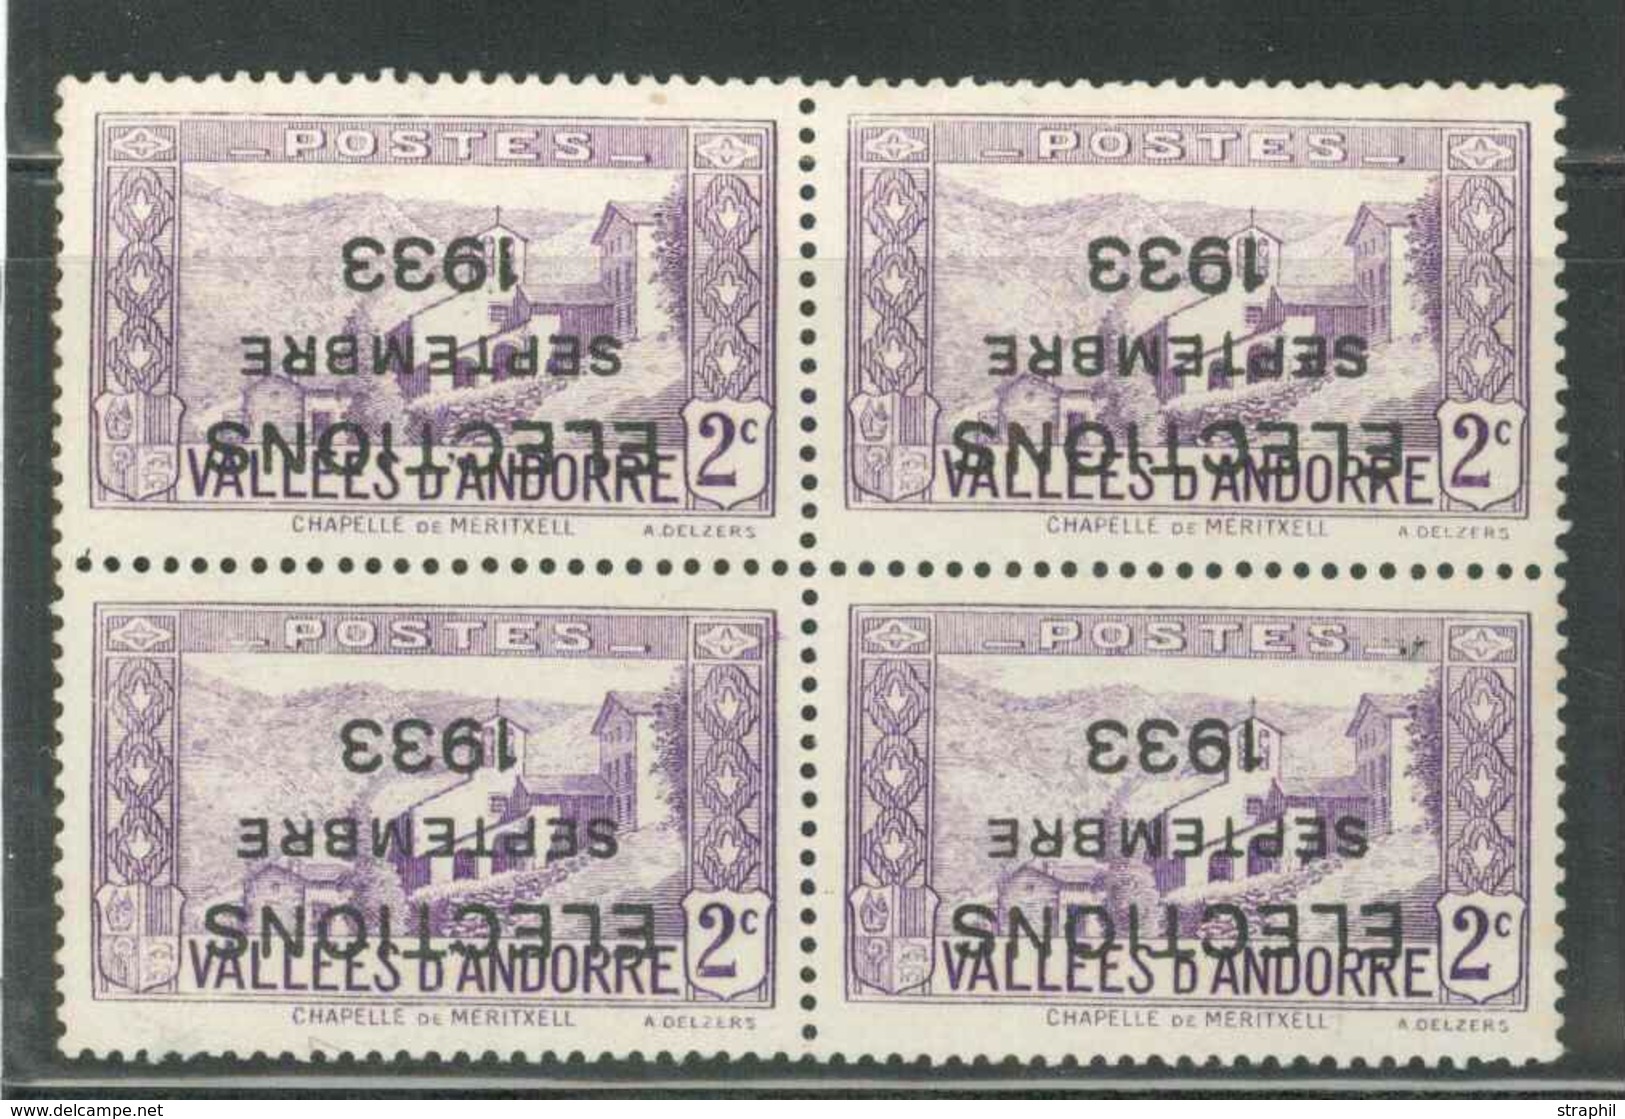 (*) TIMBRES POSTE - (*) - N°25A - 2c Violet - Bloc De 4 - Surch. Election Septembre 1933 Renversée - TB - Unused Stamps